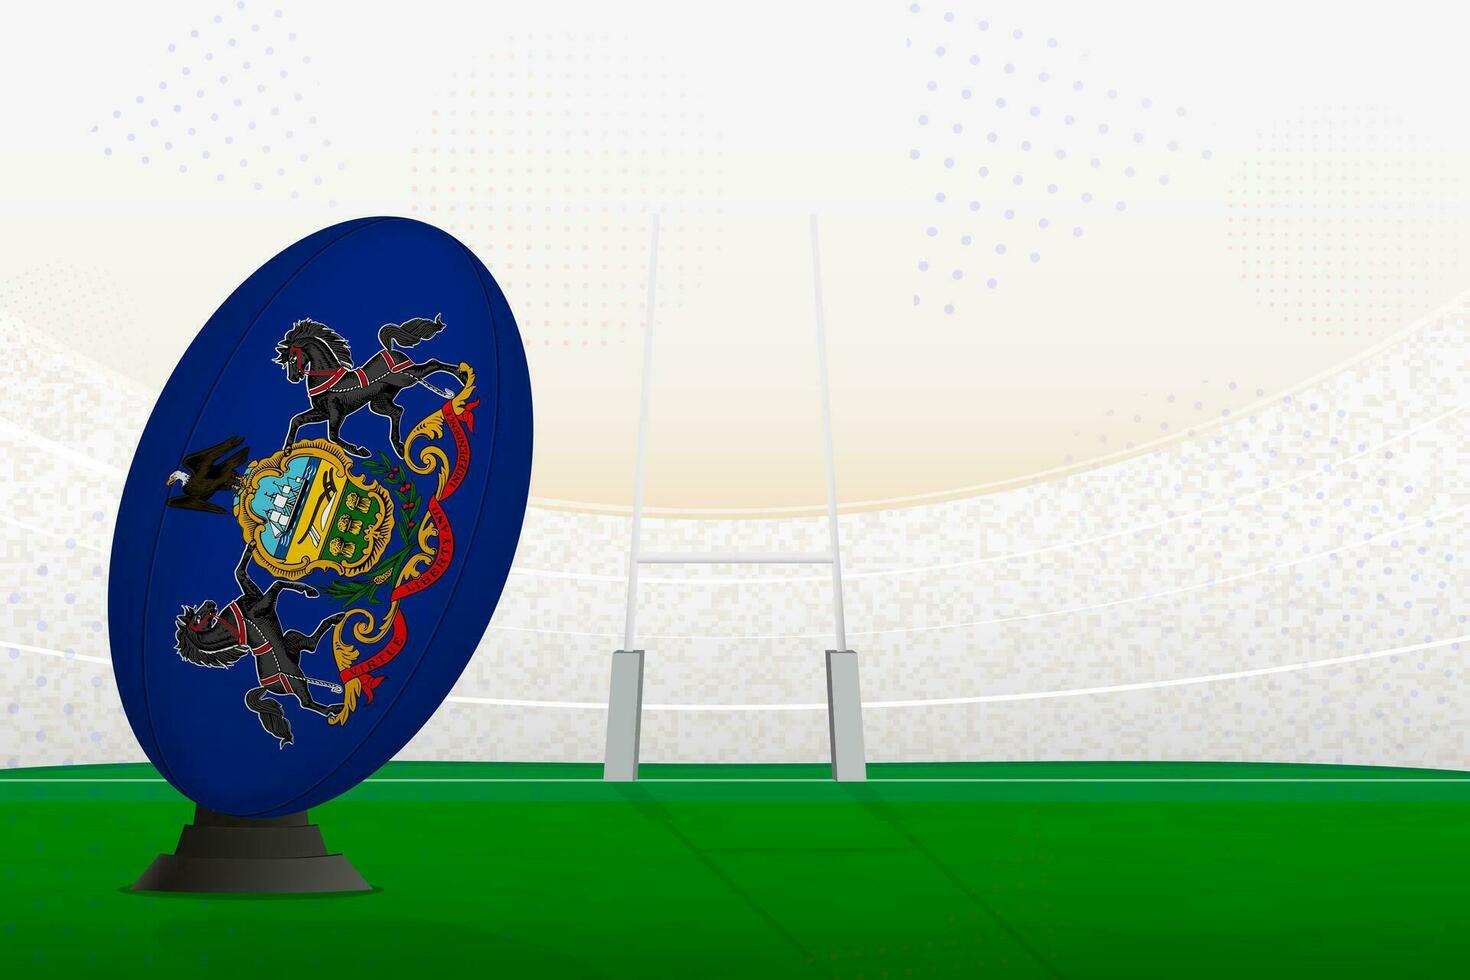 Pennsylvania nationell team rugby boll på rugby stadion och mål inlägg, framställning för en straff eller fri sparka. vektor